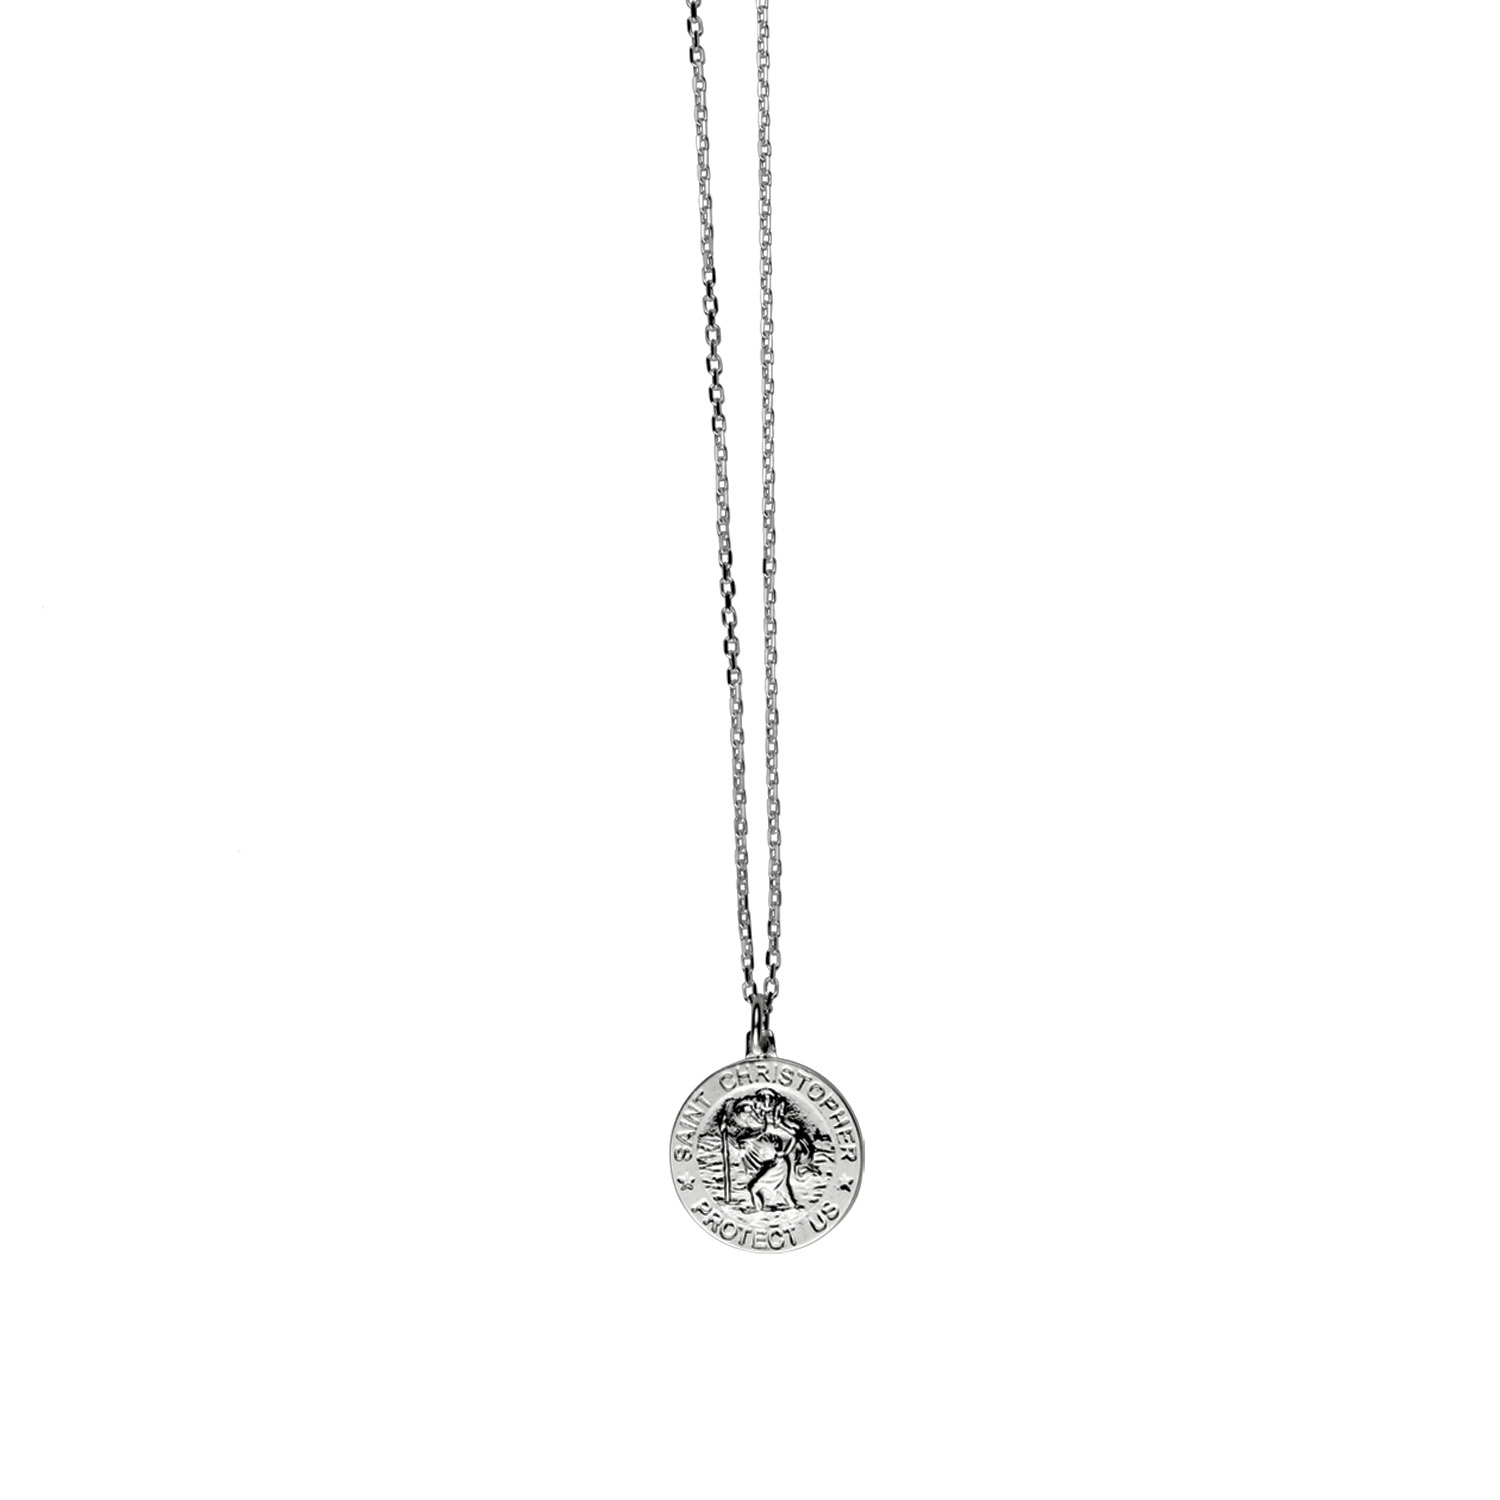 Adjustable necklace with round St Christopher - Von Treskow